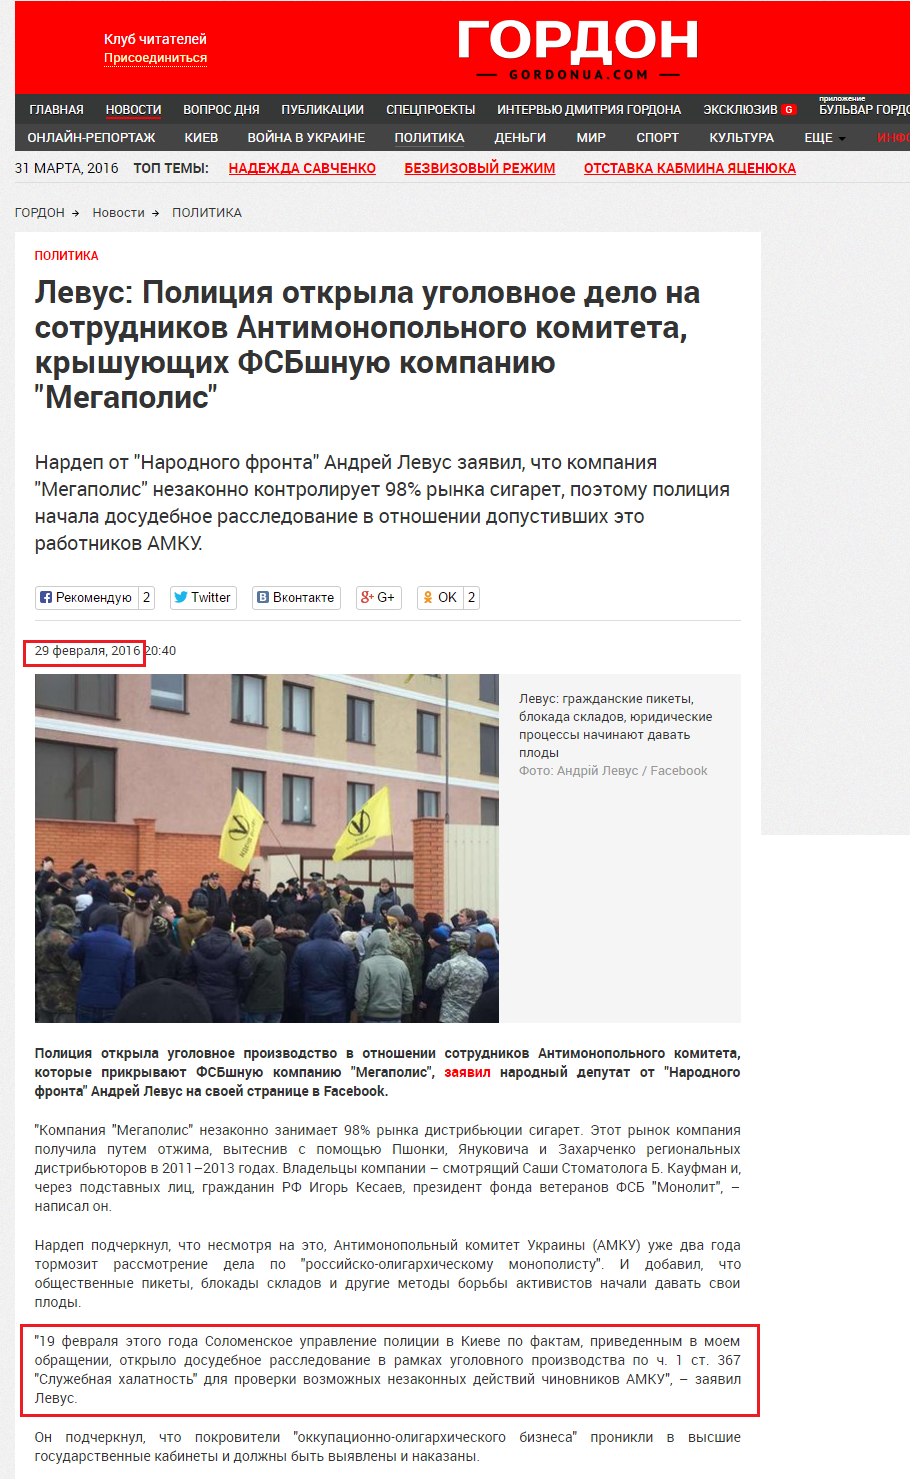 http://gordonua.com/news/politics/levus-policiya-otkryla-ugolovnoe-delo-na-sotrudnikov-antimonopolnogo-komiteta-kryshuyushchih-fsbshnuyu-kompaniyu-megapolis-122195.html